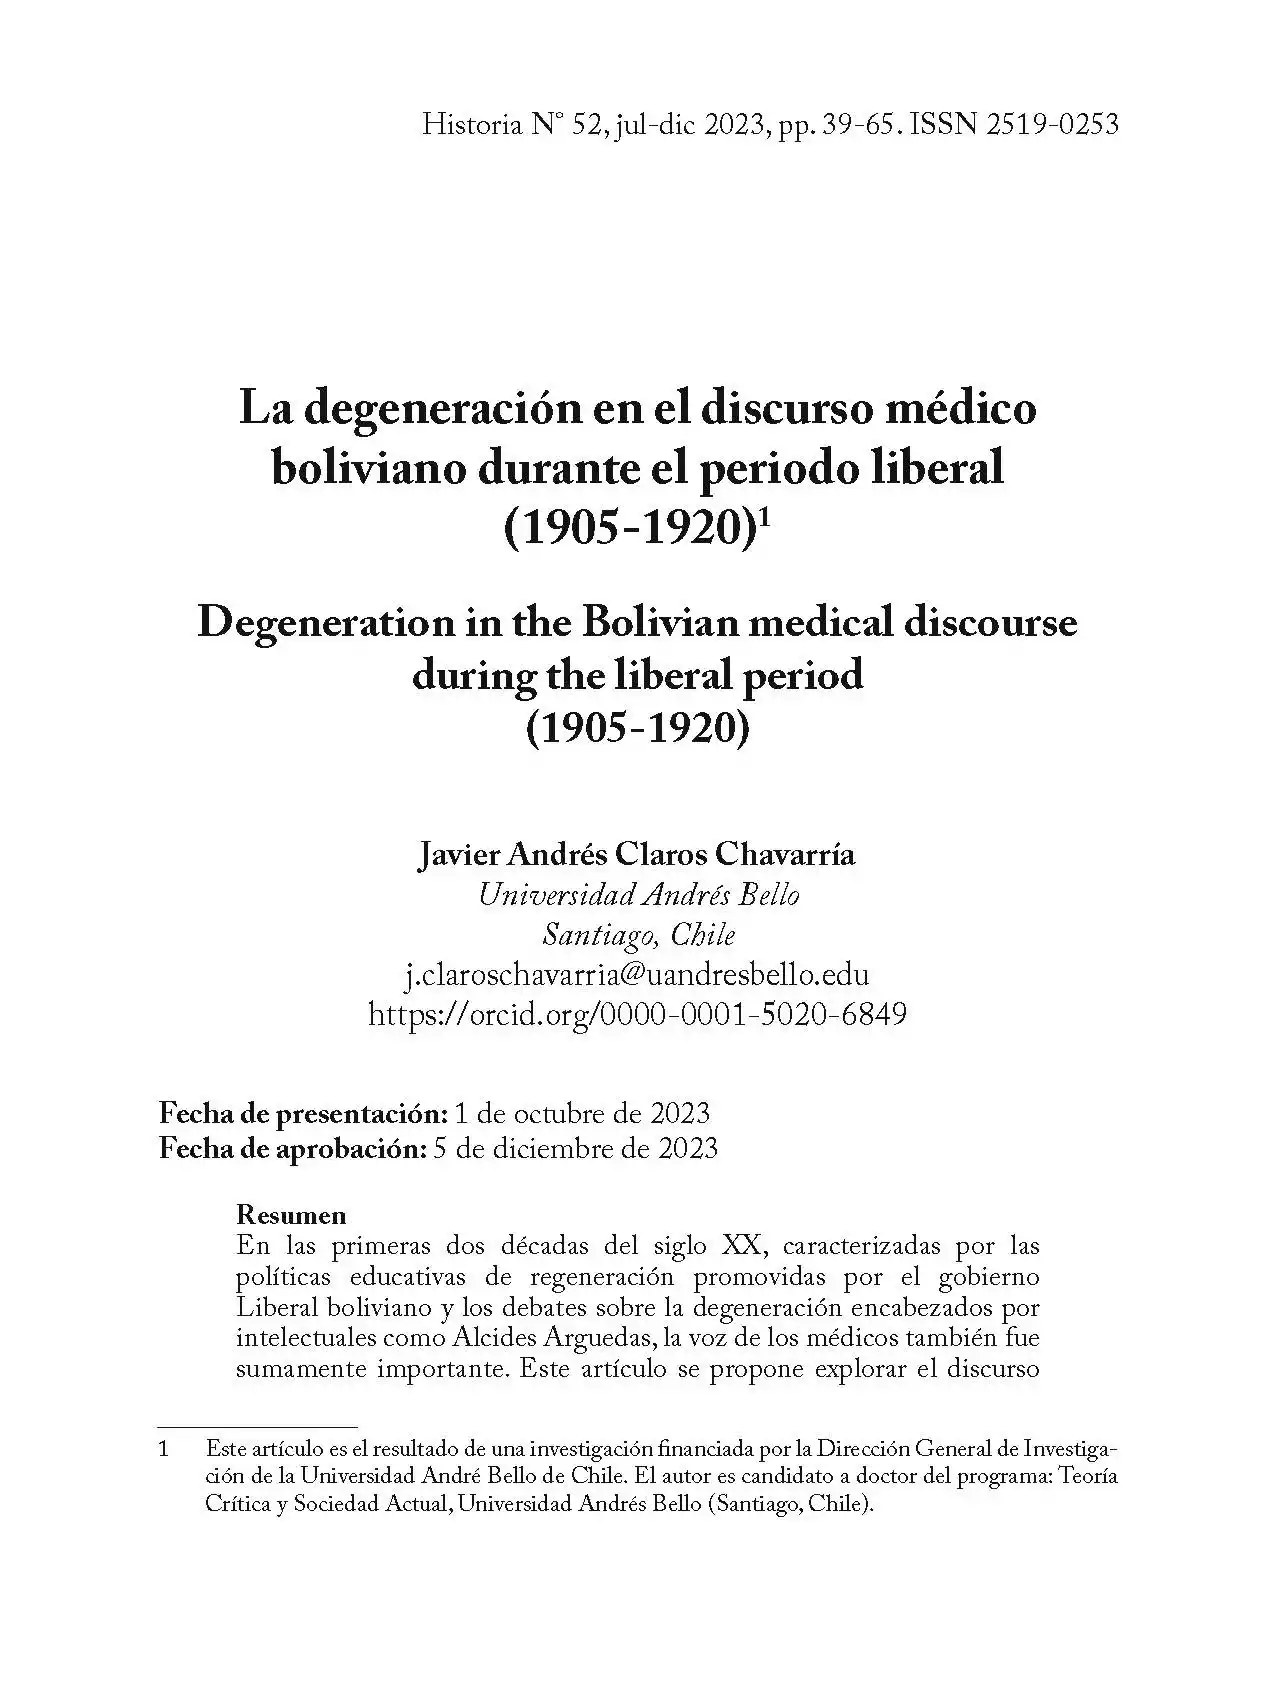 La degeneración en el discurso médico boliviano durante el periodo liberal (1905-1920)